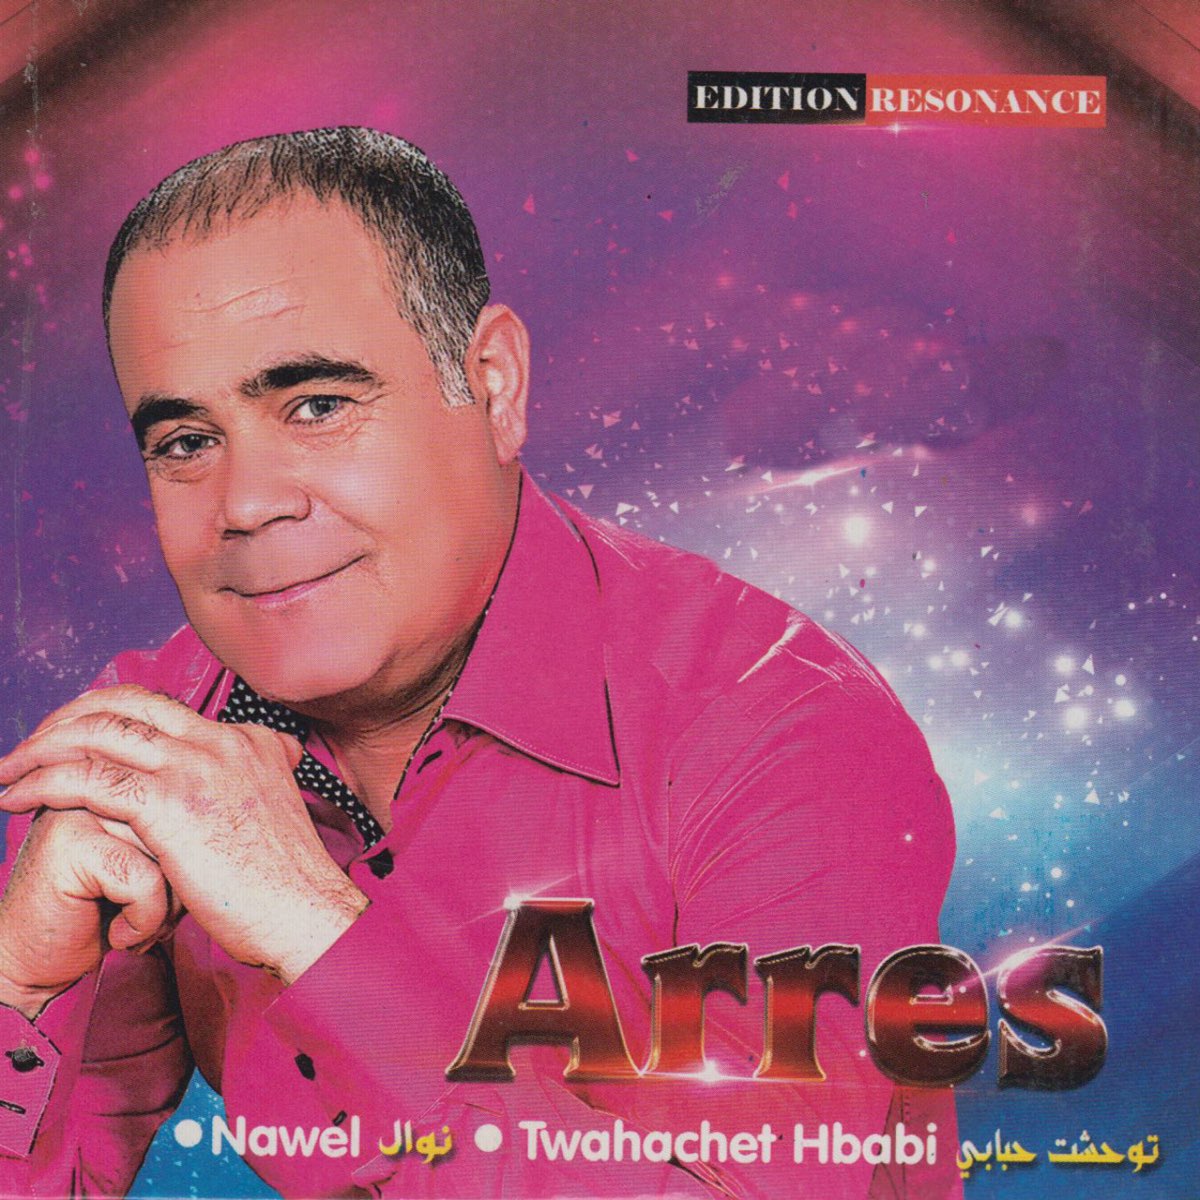 Twahachet Hbabi par Cheb Arres sur Apple Music